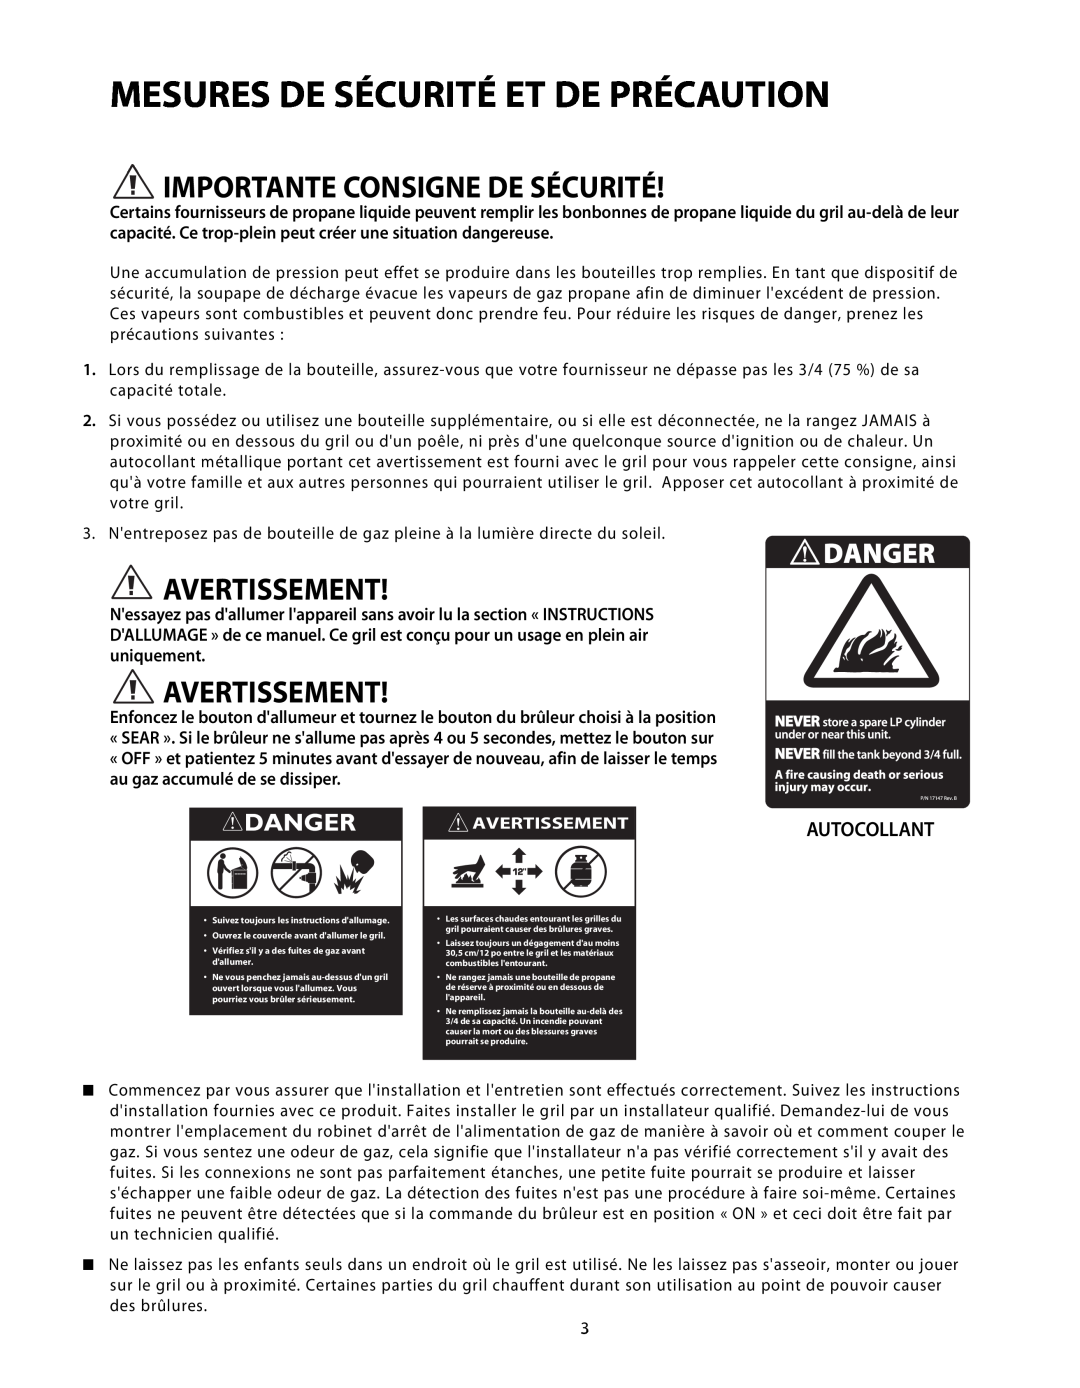 DCS BGB48-BQR manual Mesures De Sécurité Et De Précaution, Importante Consigne De Sécurité, Autocollant, Avertissement 